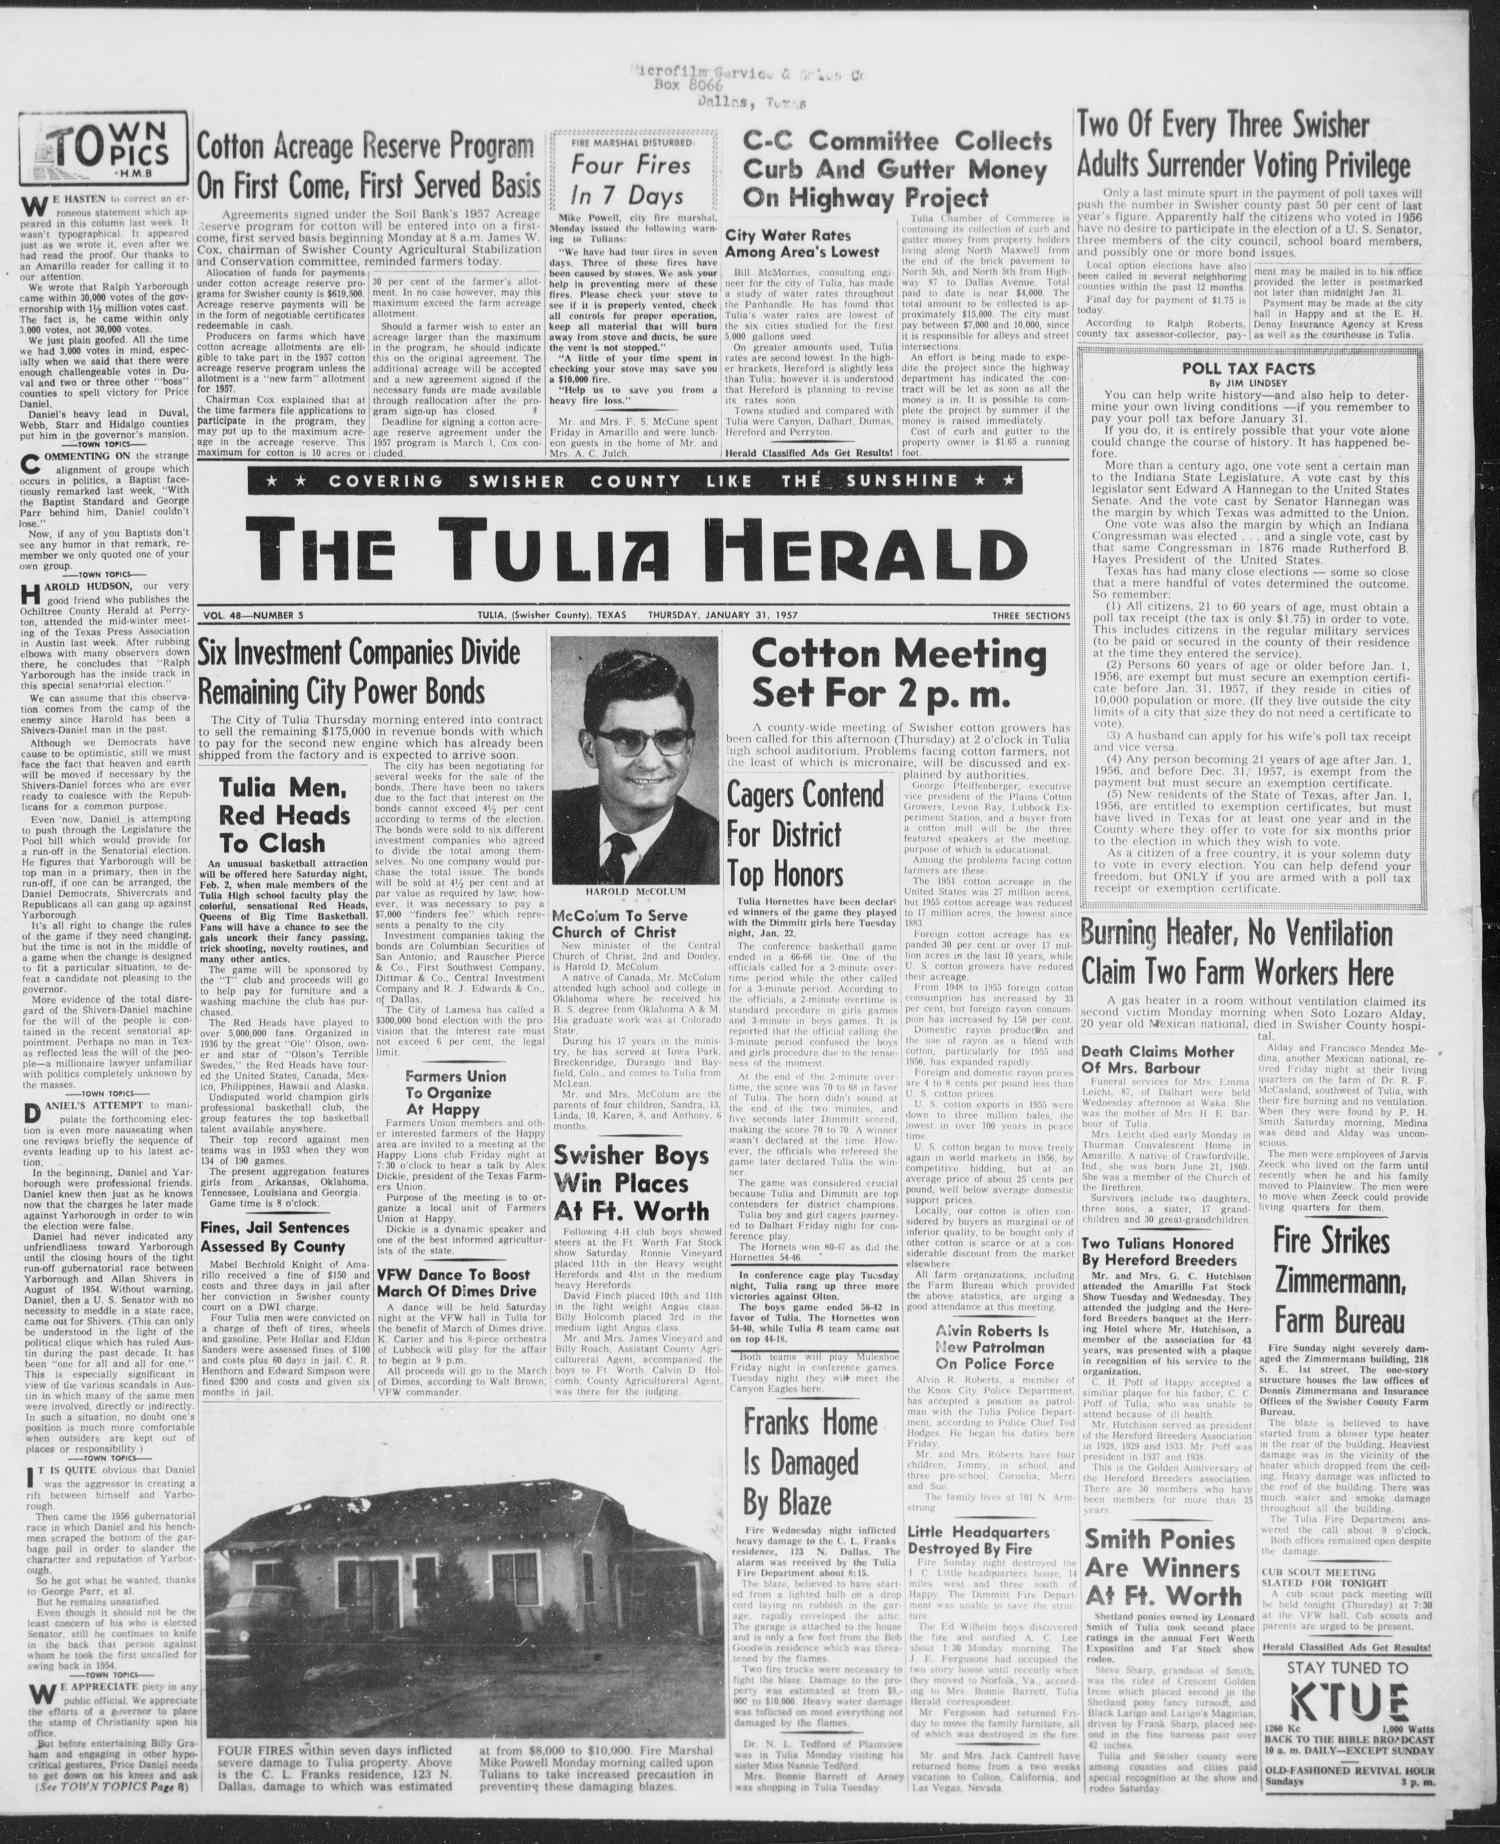 The Tulia Herald (Tulia, Tex), Vol. 48, No. 5, Ed. 1, Thursday, January 31, 1957
                                                
                                                    1
                                                